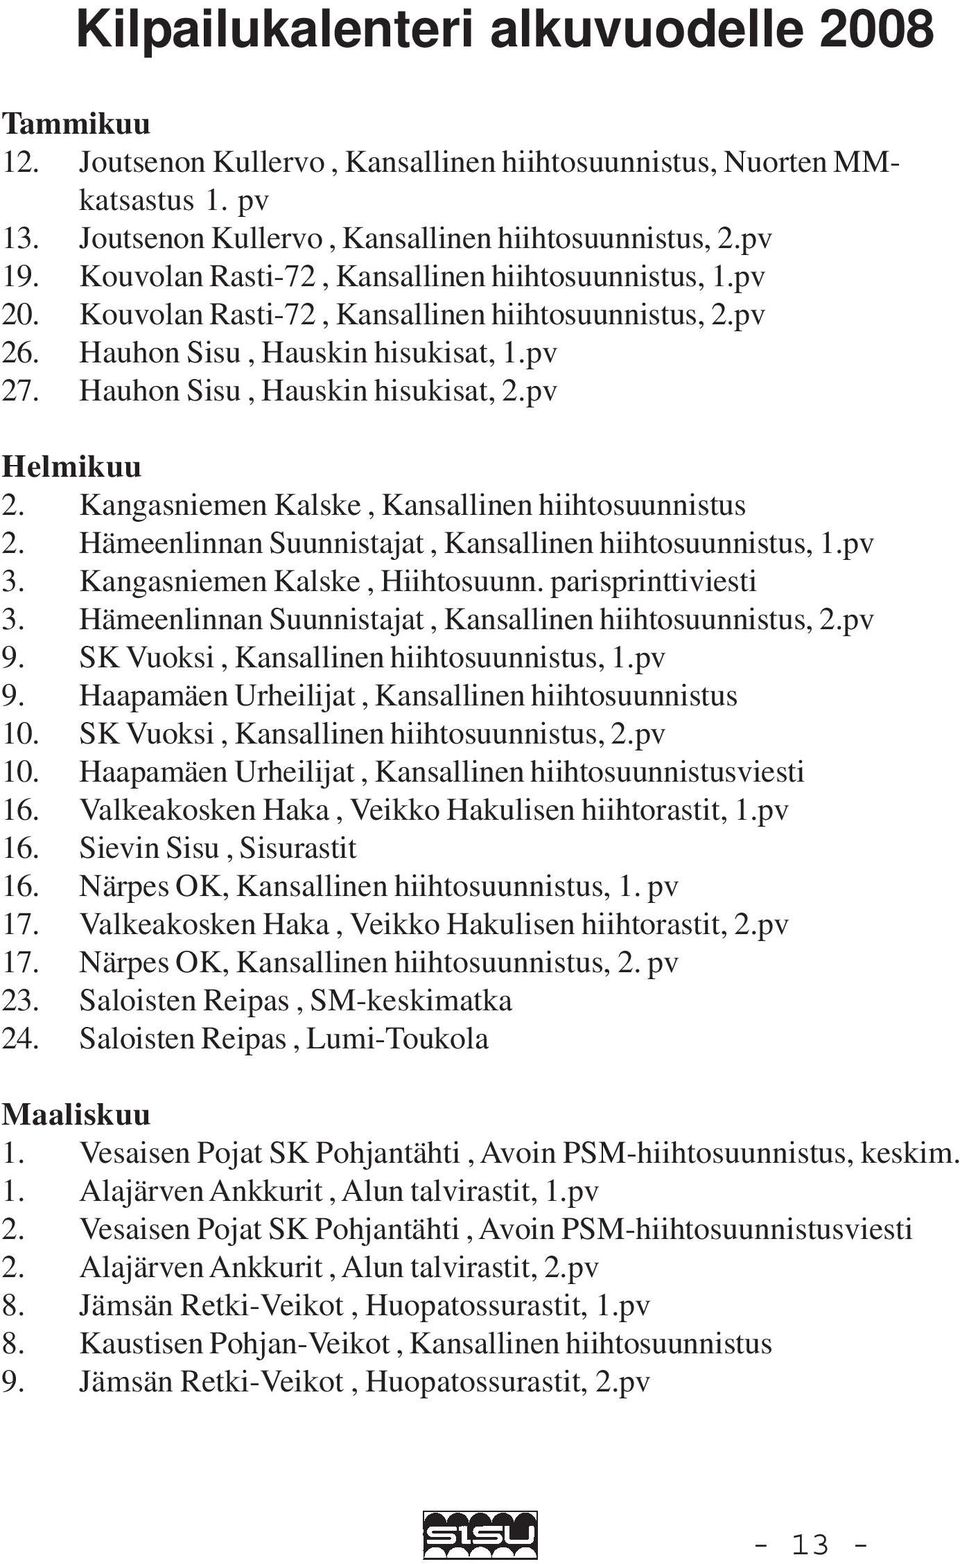 pv Helmikuu 2. Kangasniemen Kalske, Kansallinen hiihtosuunnistus 2. Hämeenlinnan Suunnistajat, Kansallinen hiihtosuunnistus, 1.pv 3. Kangasniemen Kalske, Hiihtosuunn. parisprinttiviesti 3.